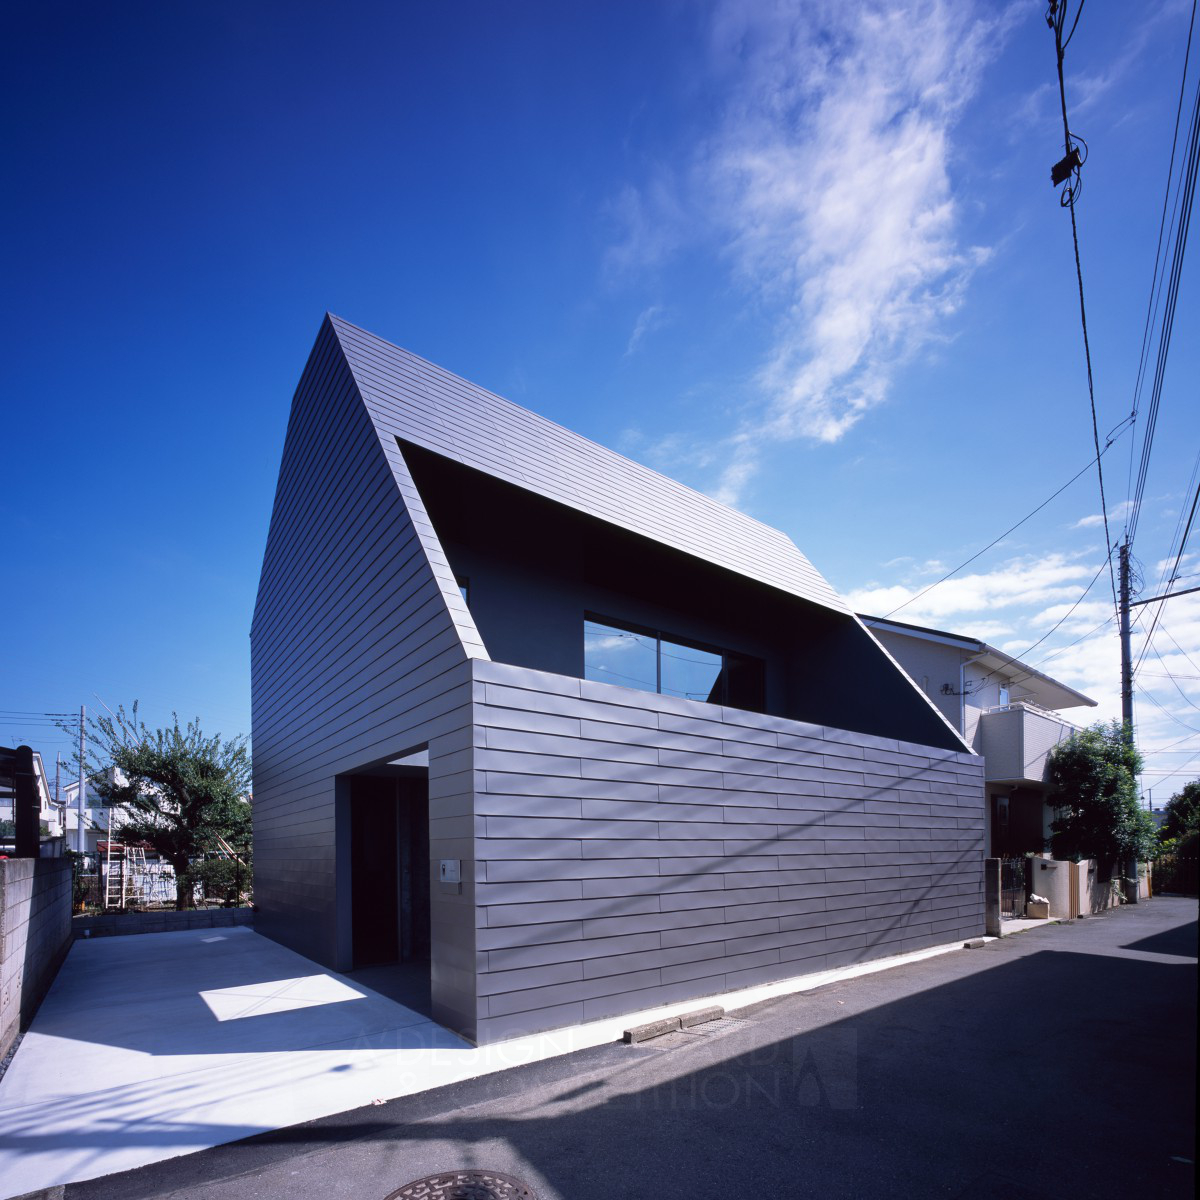 도쿄의 숨겨진 보석: "커버" 주택 디자인